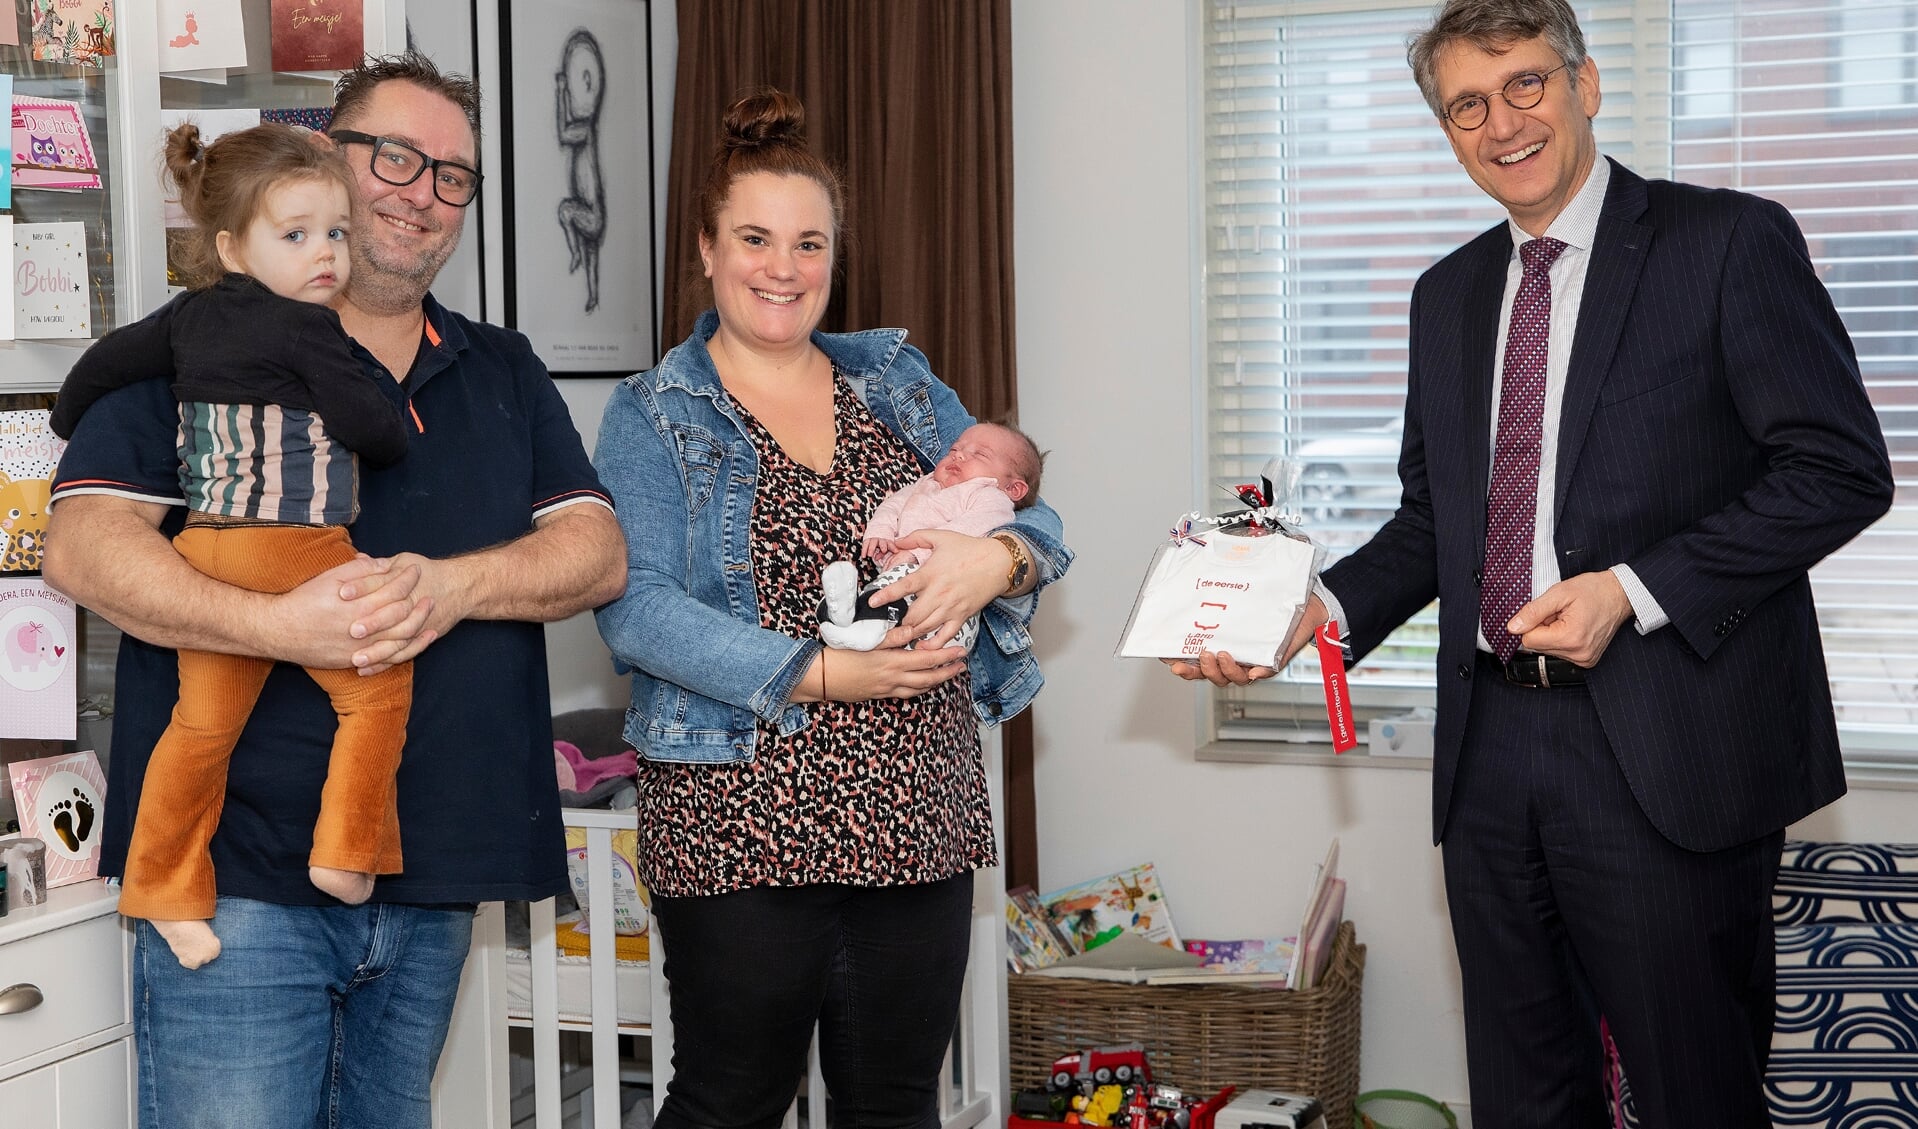 Burgemeester Hillenaar brengt de felicitaties over aan de familie Du Croix. Dochter Bobbi is de eerstgeborene in het Land van Cuijk. 